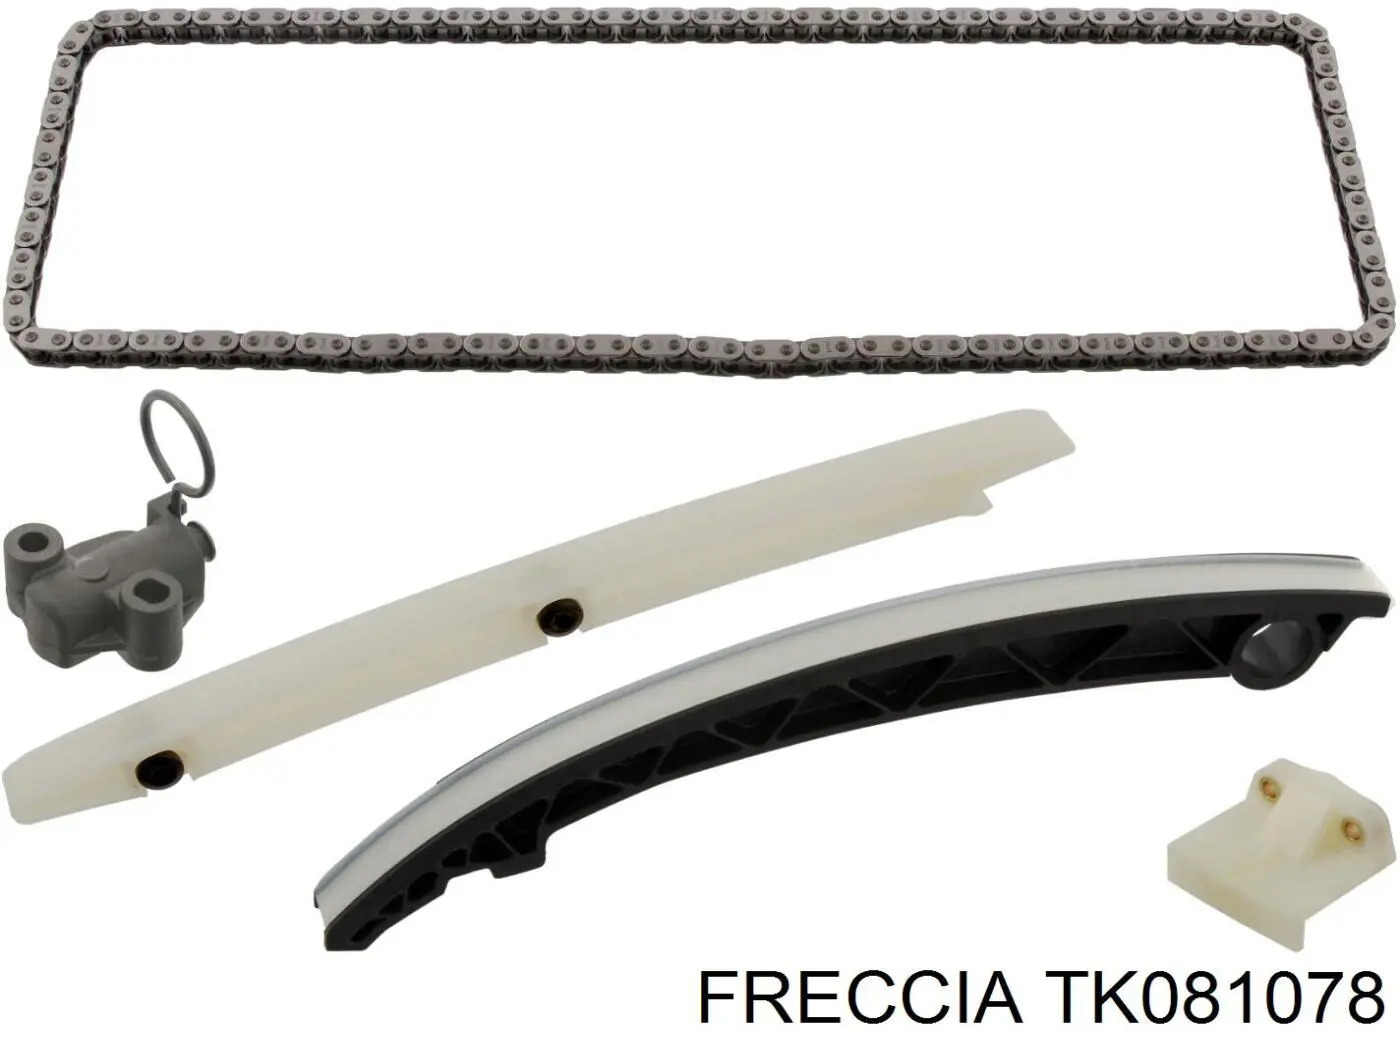 TK081078 Freccia ланцюг грм, комплект